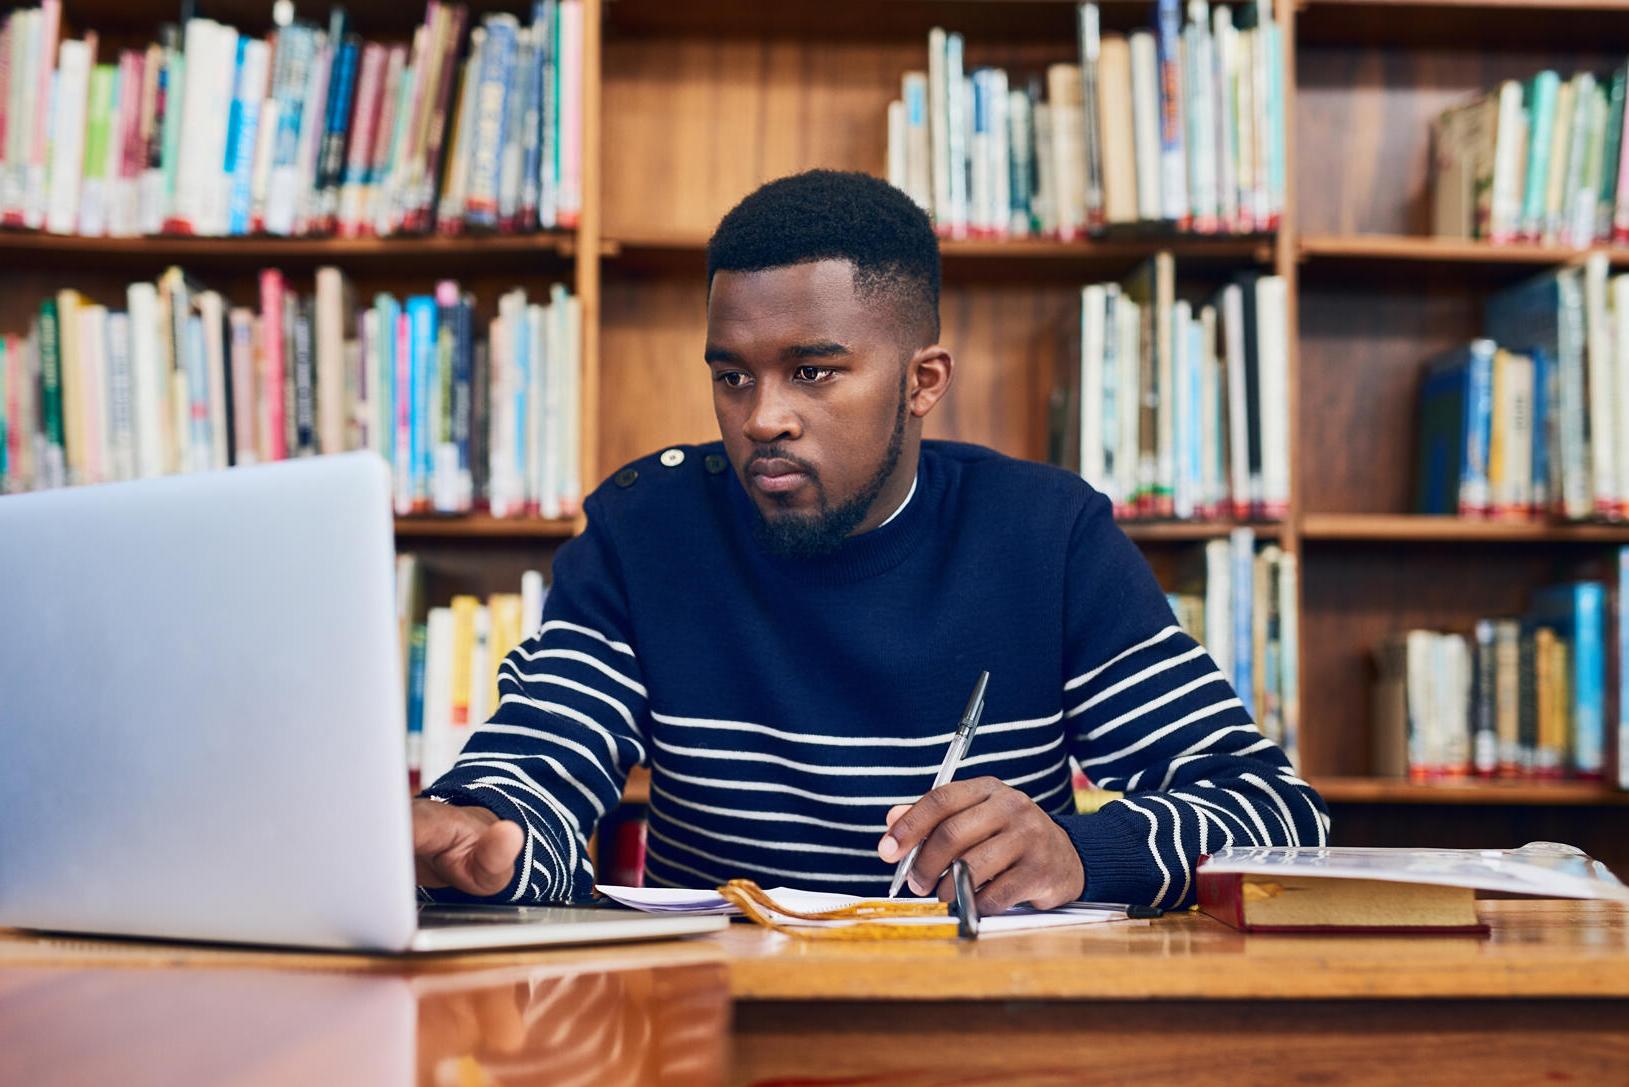 穿着蓝白条纹毛衣的男学生坐在电脑前，后面是书架